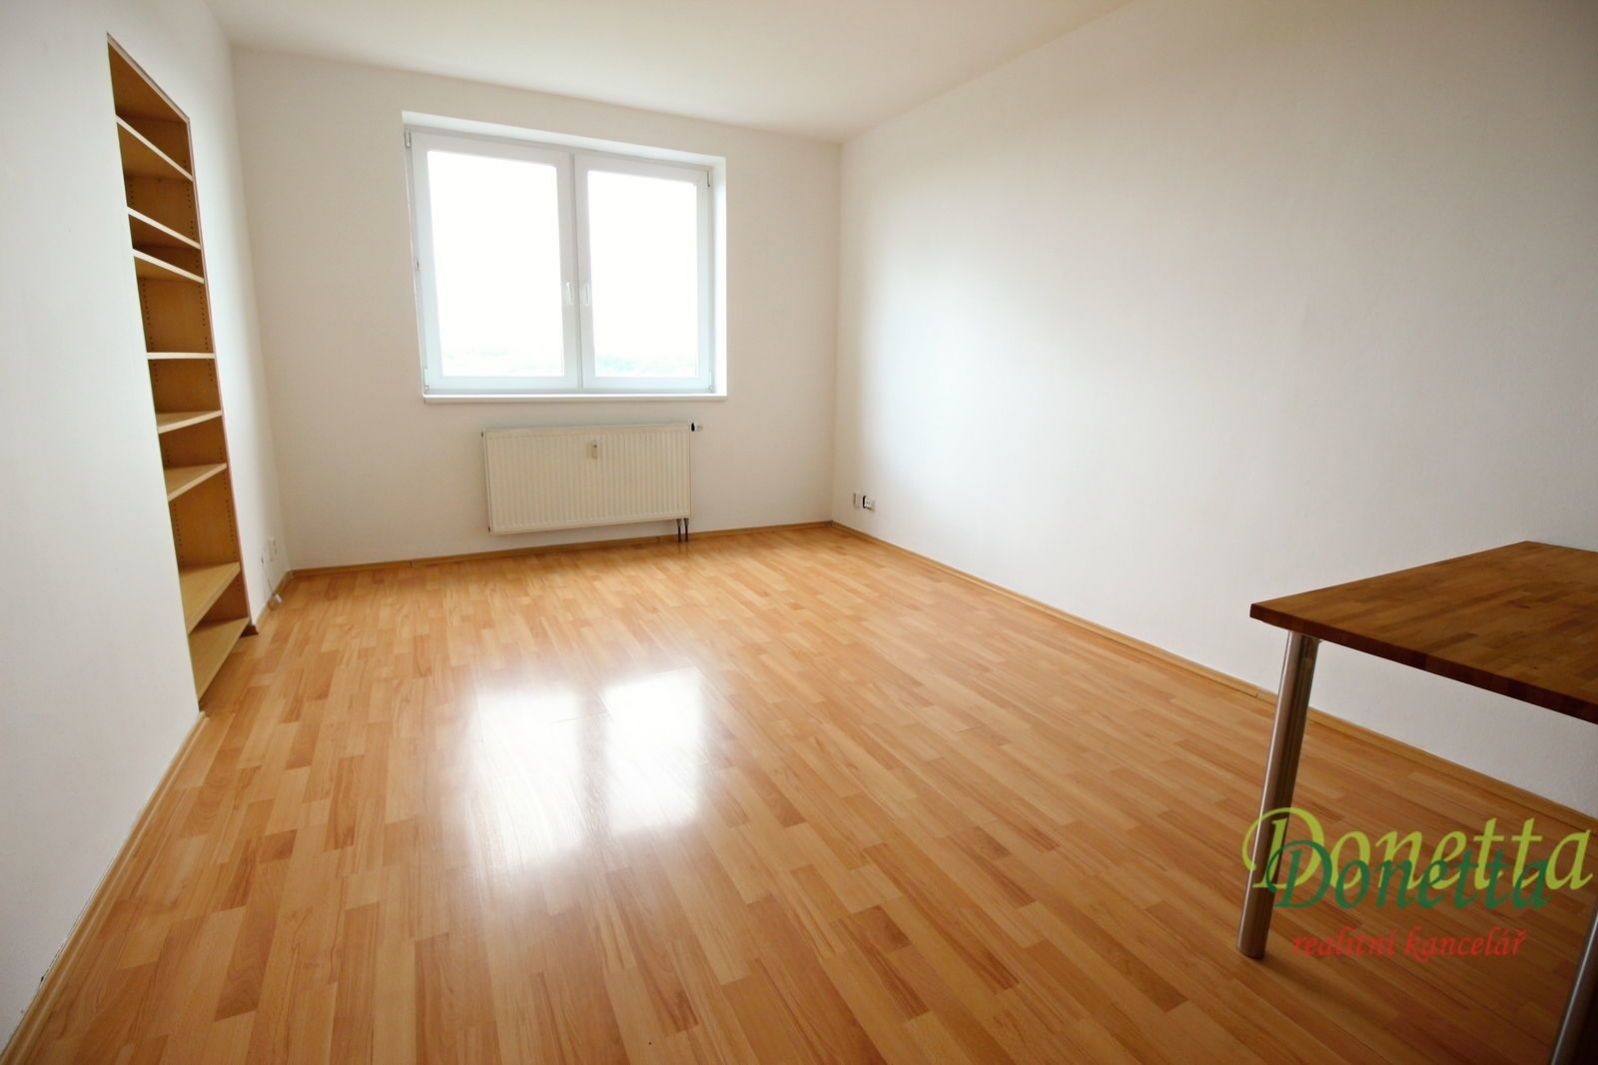 Prodej bytu 2+kk, 42 m2, OV, půdní vestavba s výhledem do zeleně, Praha 4 - Krč, obrázek č. 2